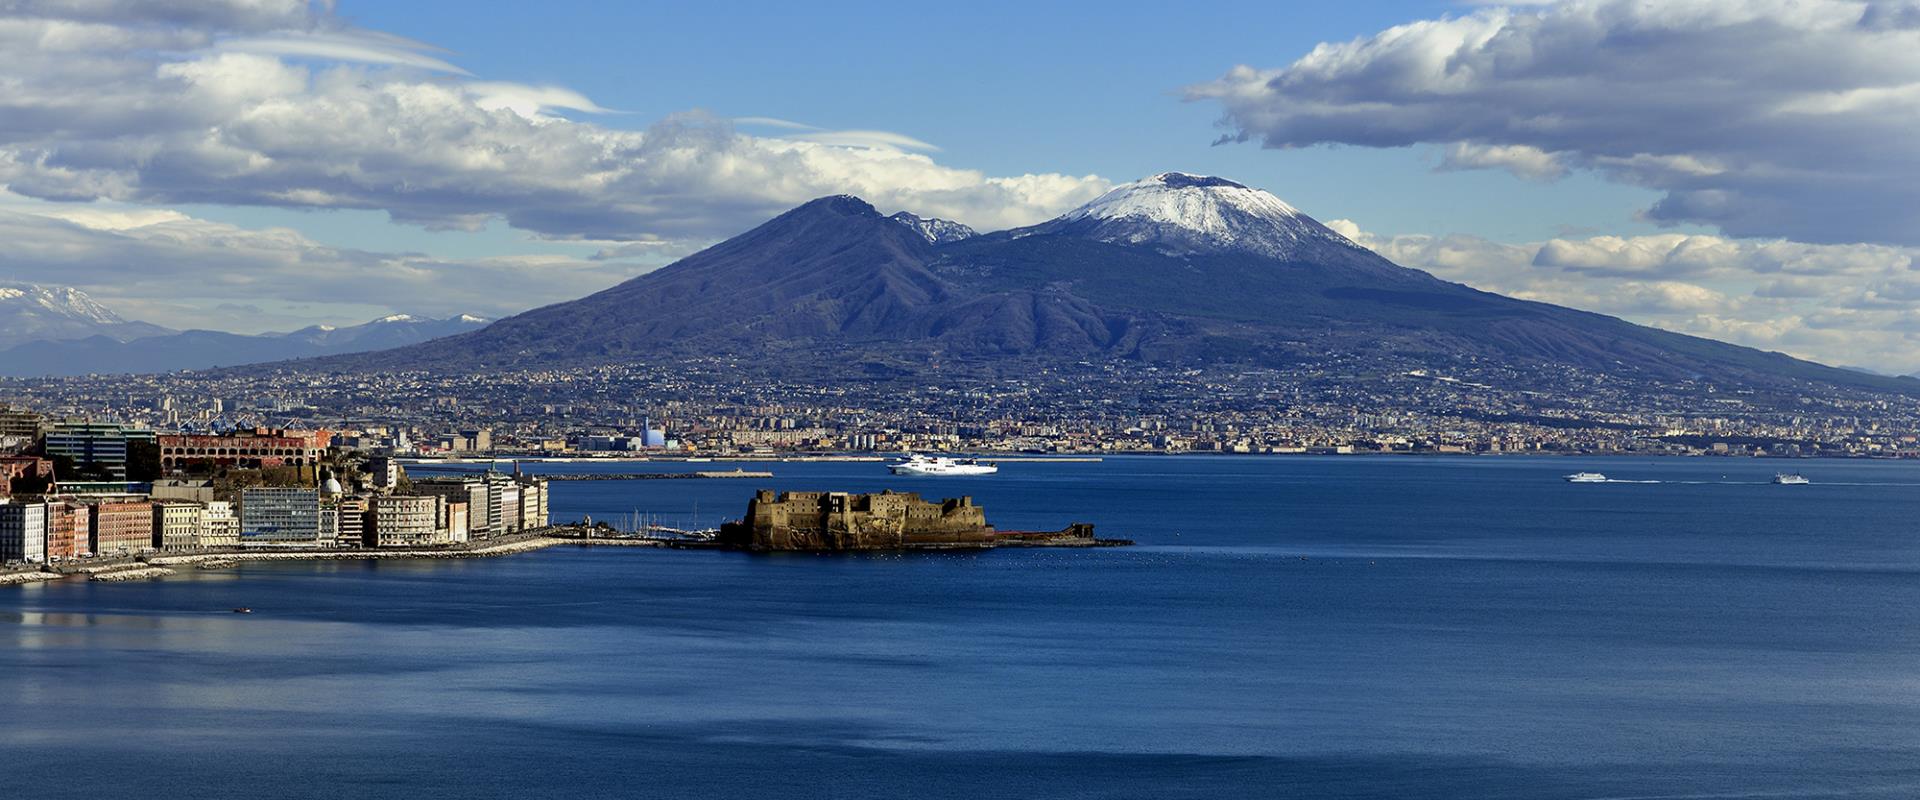 Die herrliche Aussicht auf den Golf von Neapel Hotel Posillipo